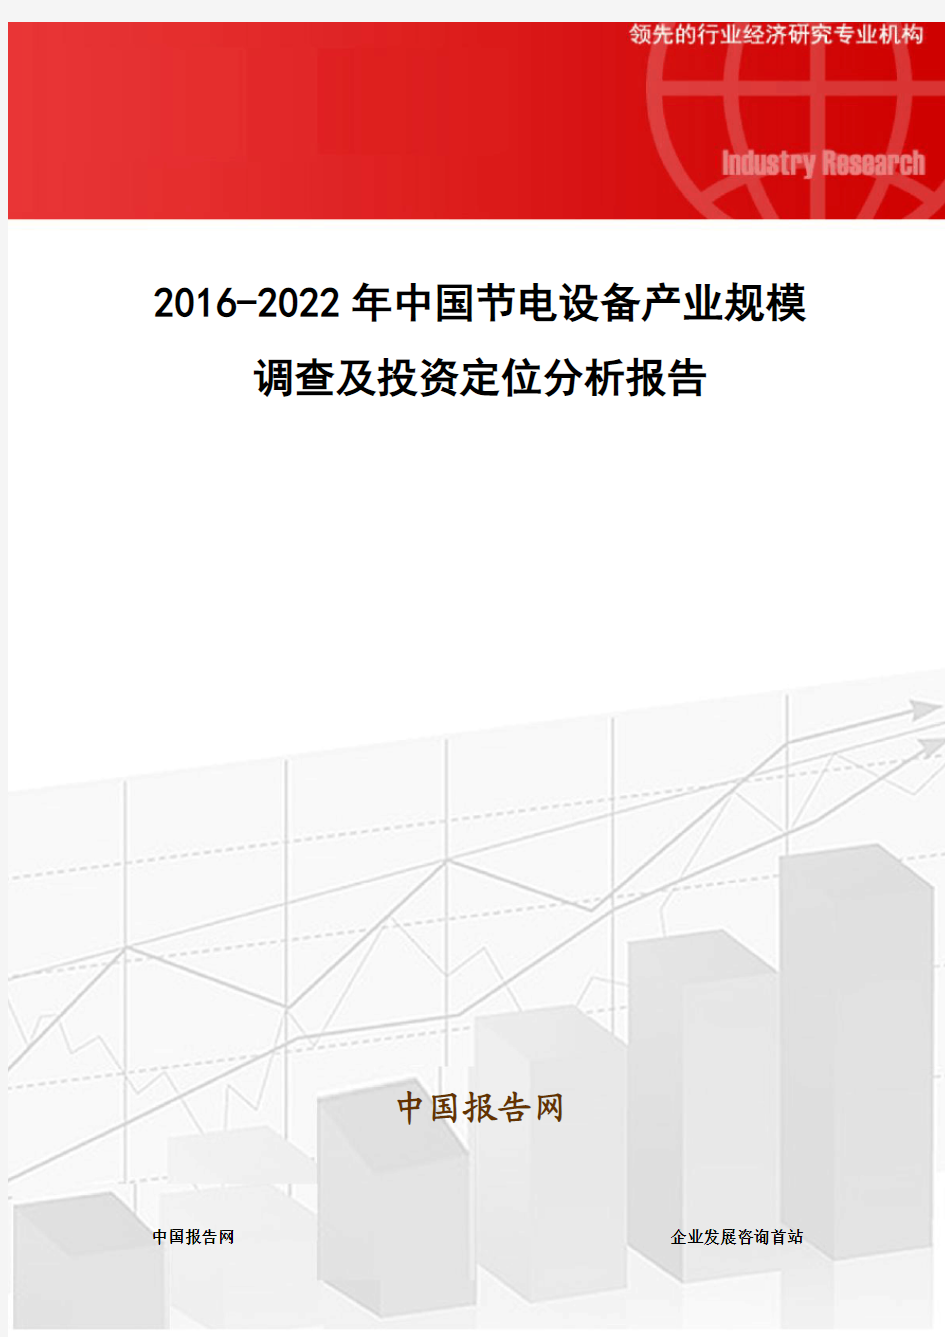 2016-2022年中国节电设备产业规模调查及投资定位分析报告